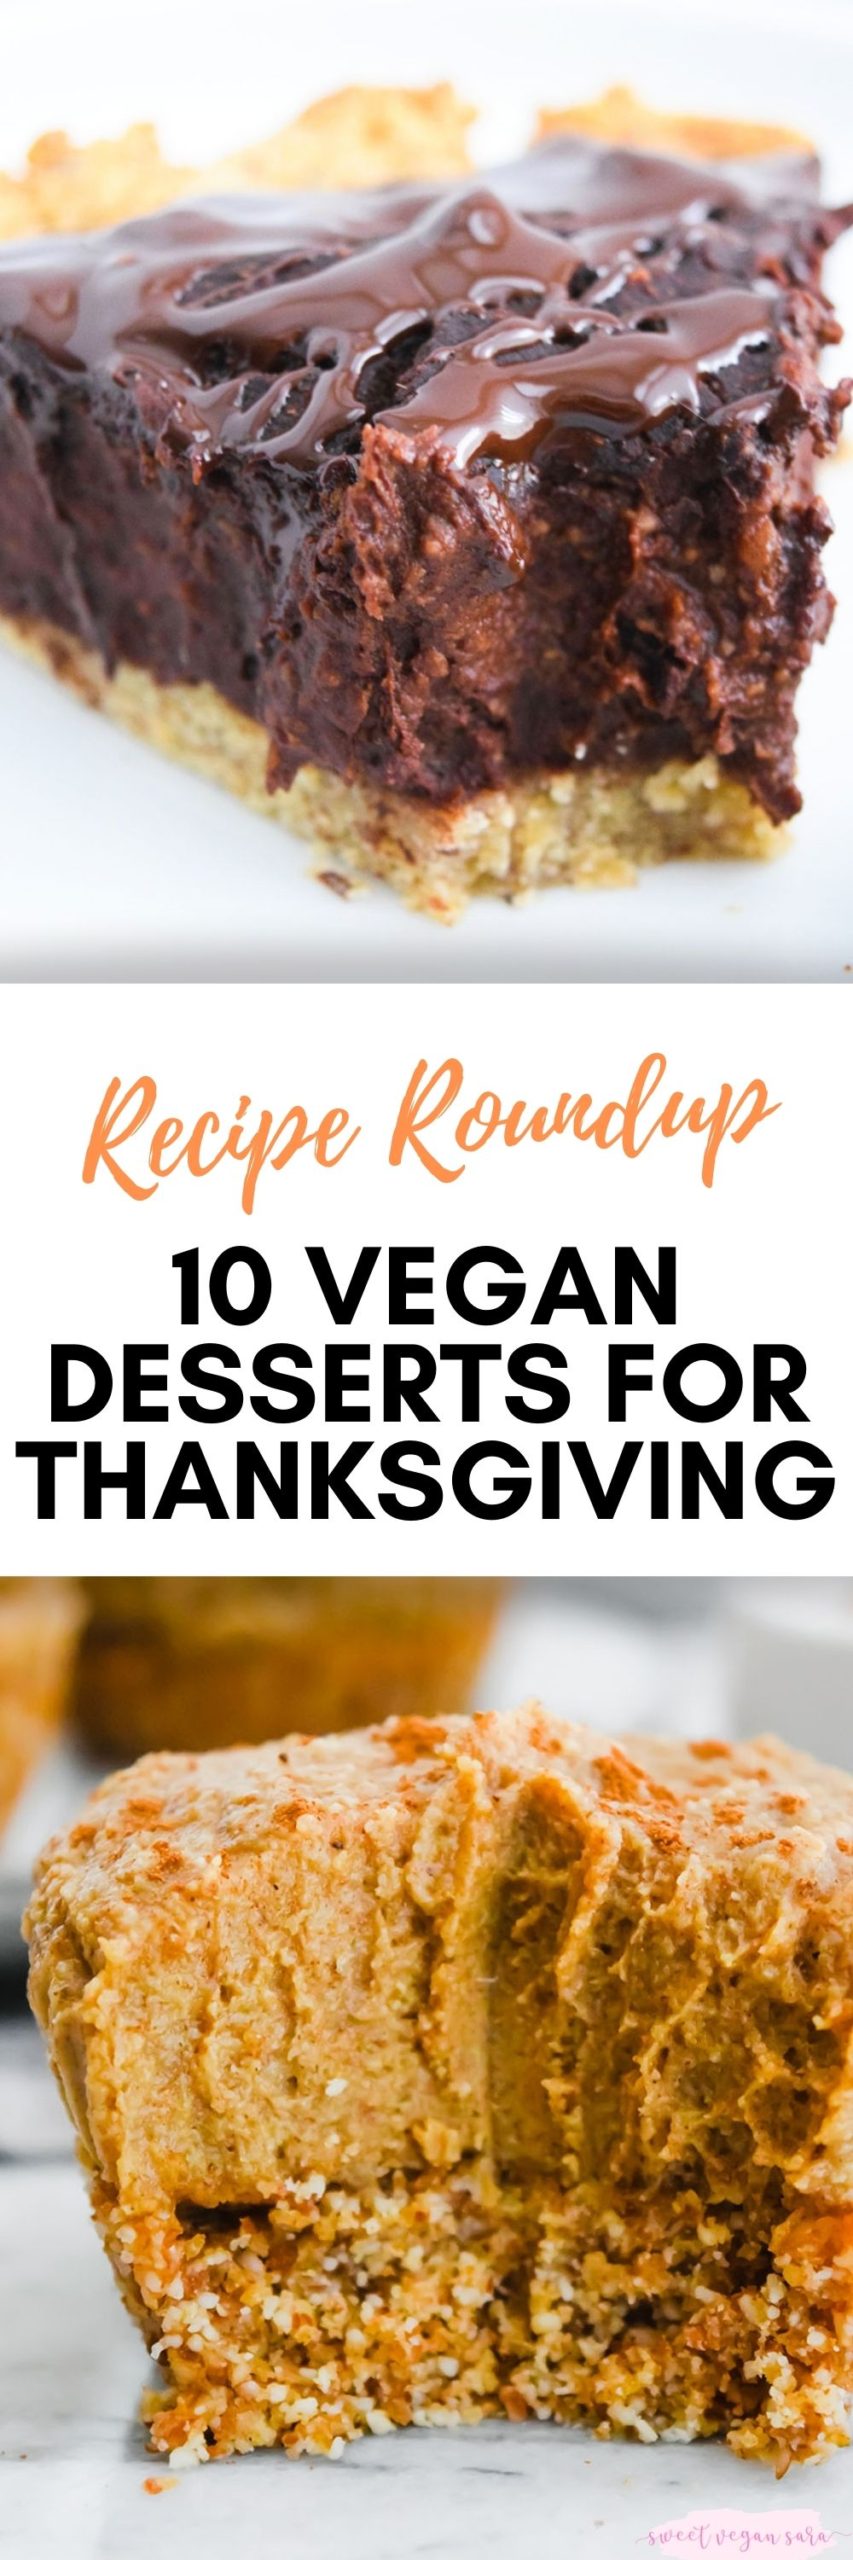 10 Vegan Desserts for Thanksgiving - Sweet Vegan Sara